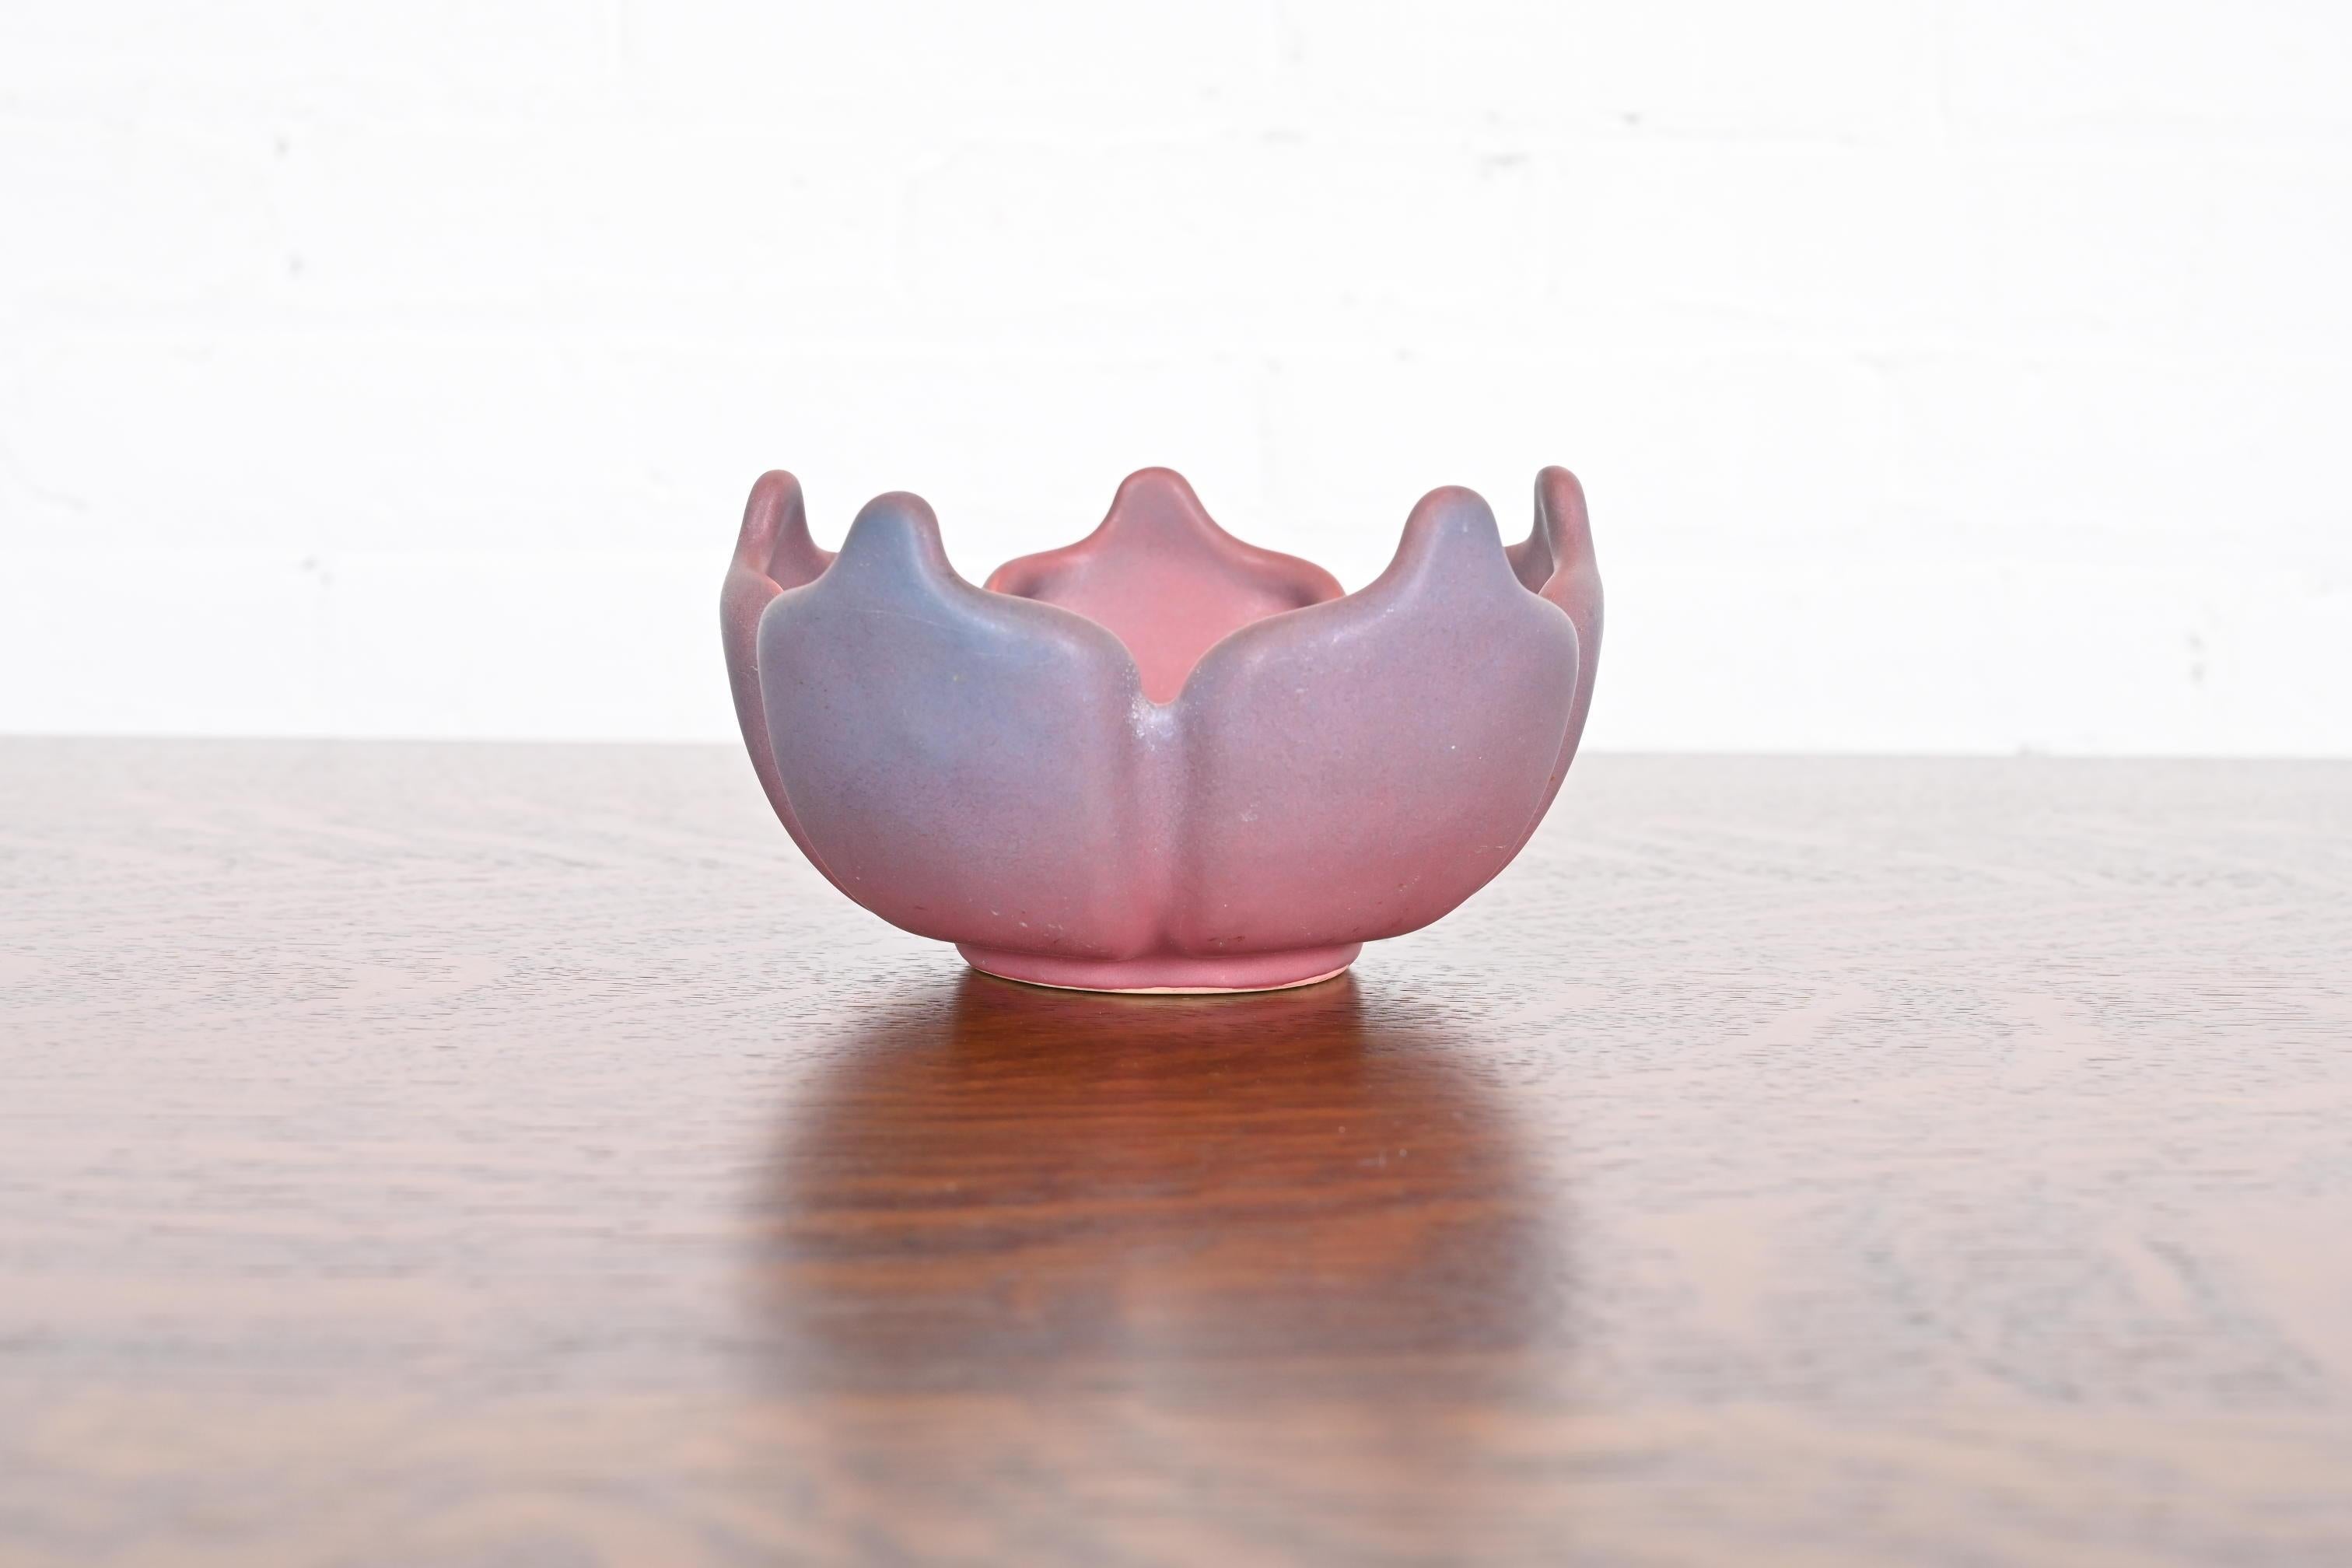 Eine herrliche Arts & Crafts Zeitraum Tulpe Form rosa und lavendel glasierte Keramik Kunst Keramik Schüssel, Aschenbecher, oder fangen

Von Van Briggle (signiert auf der Unterseite)

USA, Anfang 20. Jahrhundert

Maße: 5,5 